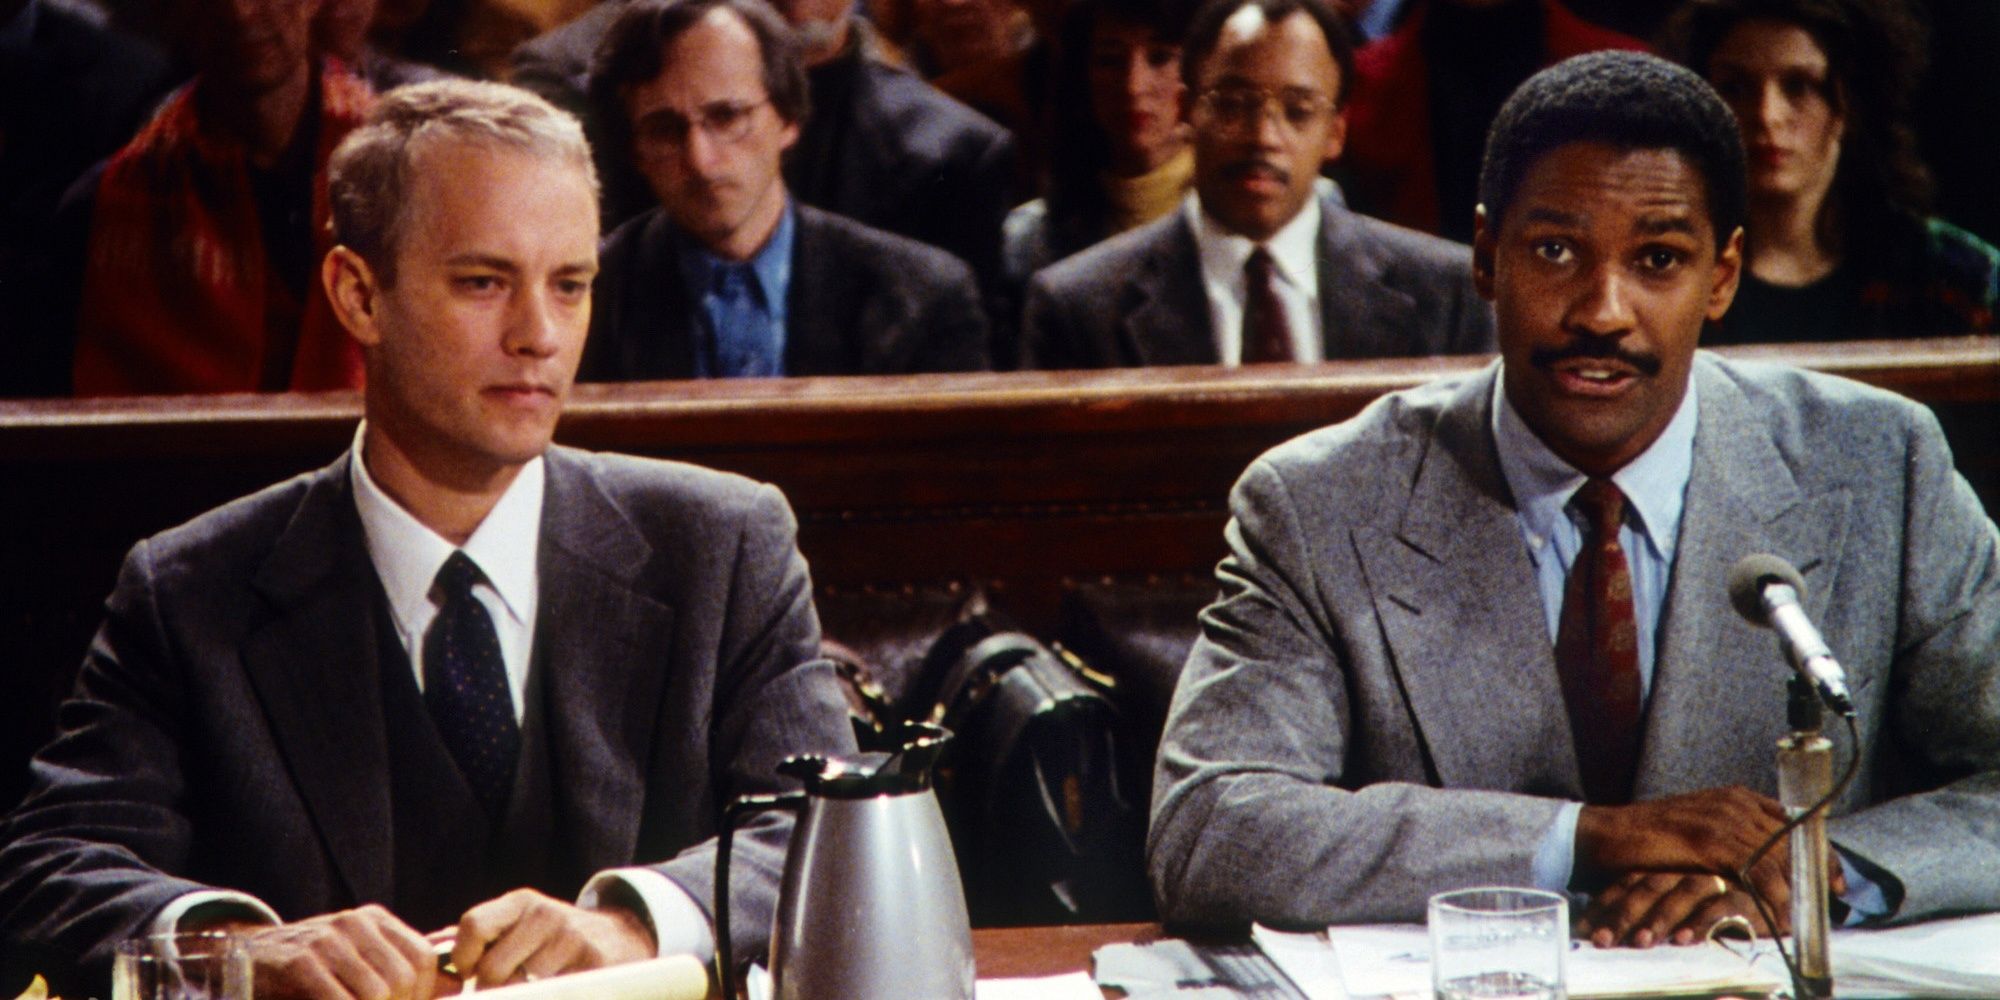 Joe Miller (Denzel Washington) and Andrew Beckett (Tom Hanks) in court in Philadelphia.